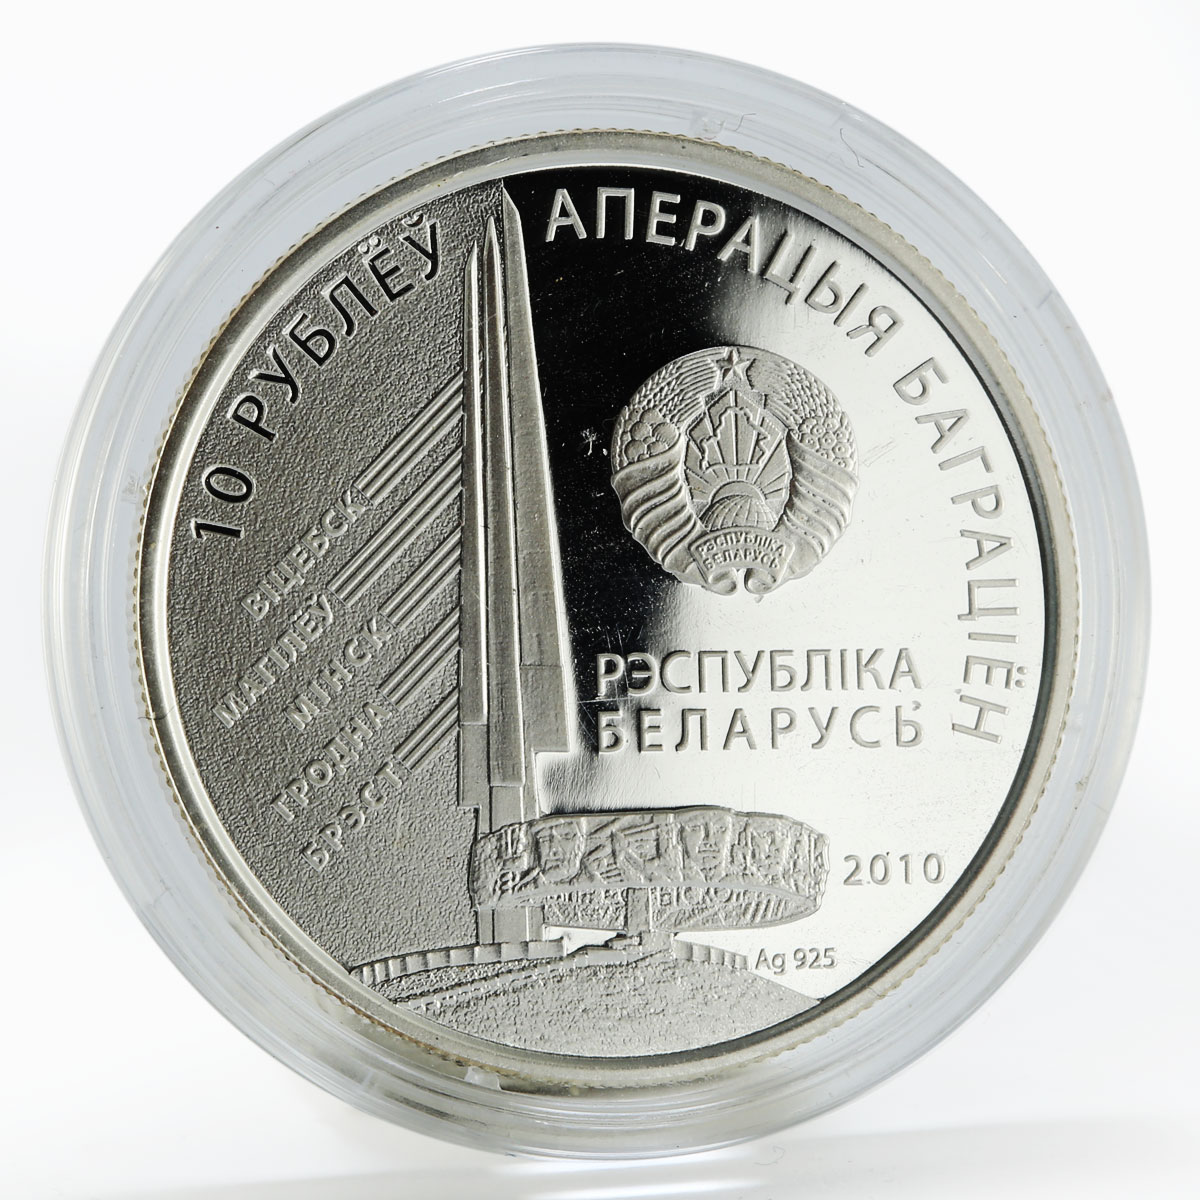 Belarus 10 rubles Operation Bagration I.H. Bagramyan silver coin 2010